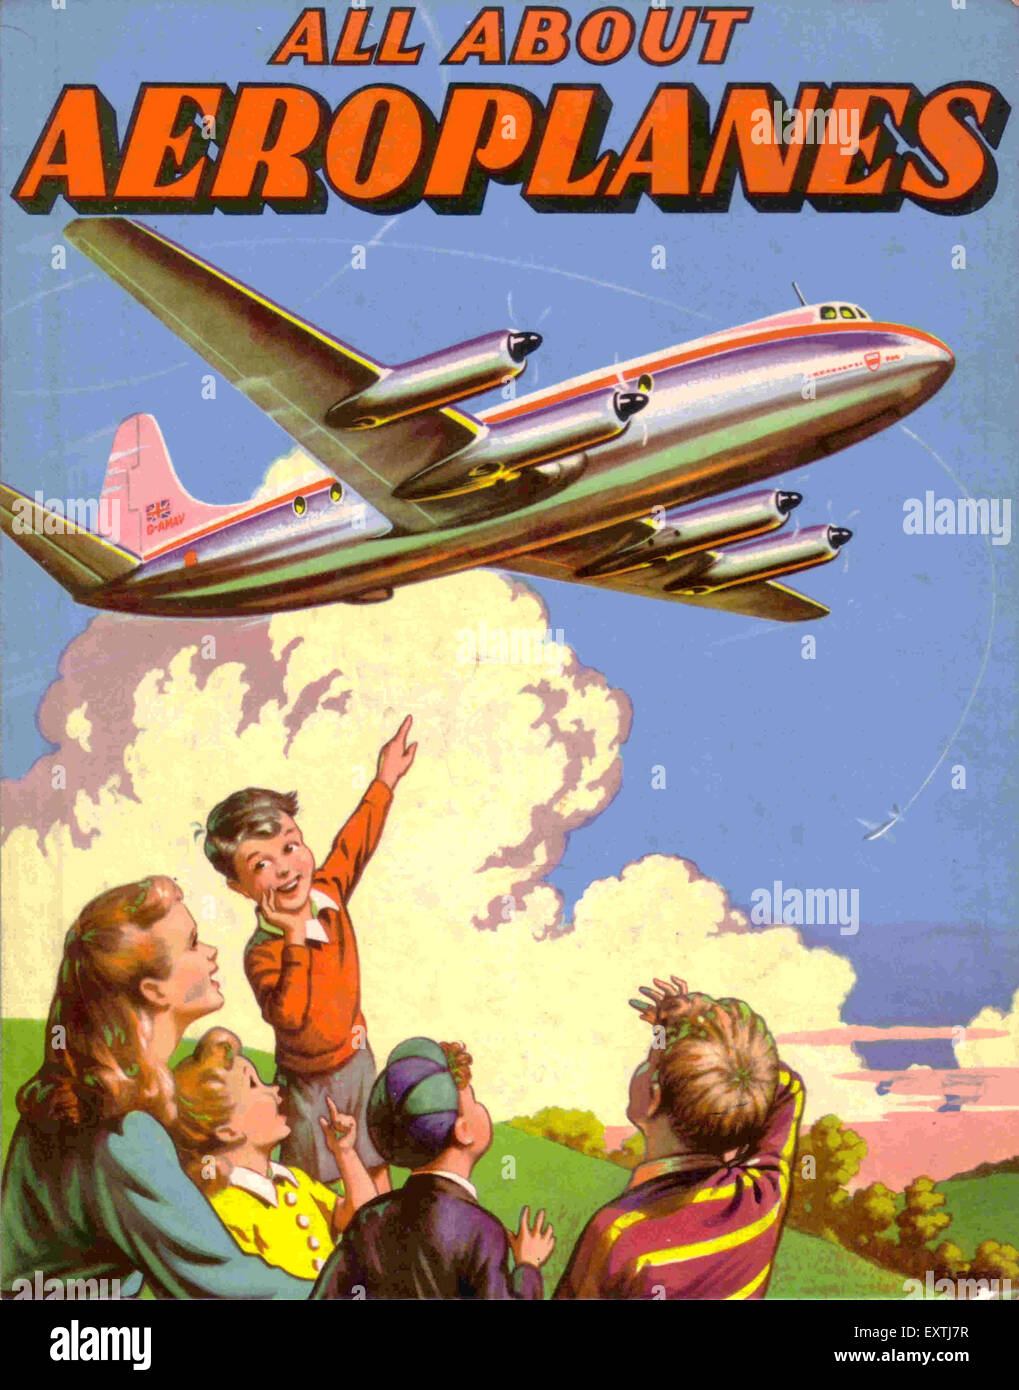 Reino Unido todo sobre aviones portada del libro. Foto de stock